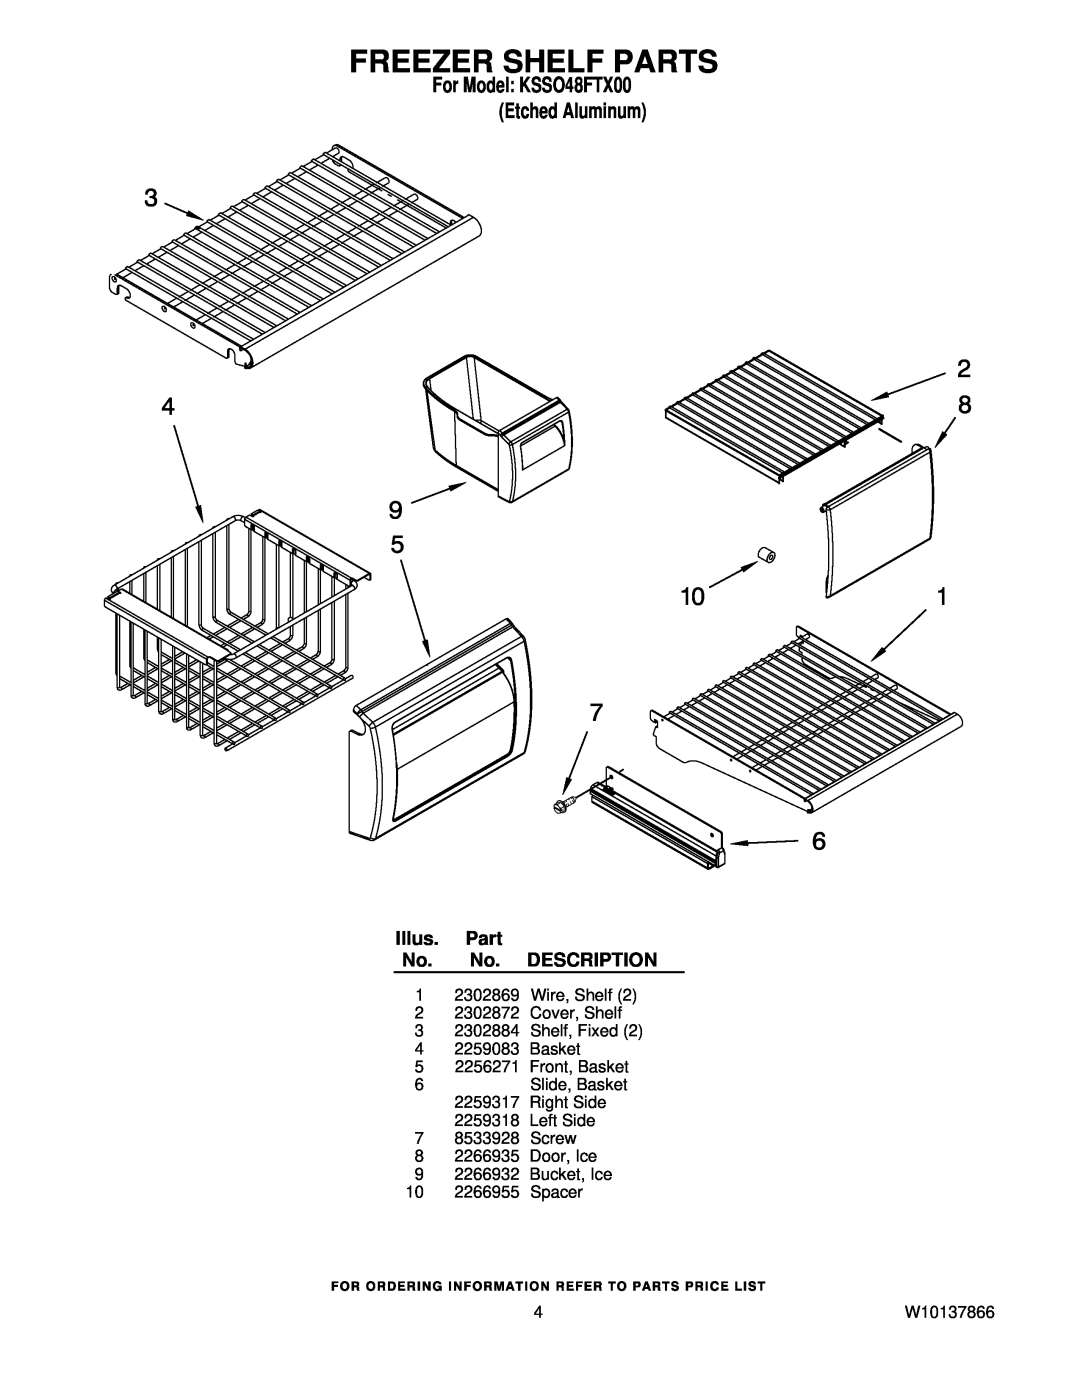 KitchenAid manual Freezer Shelf Parts, For Model KSSO48FTX00 Etched Aluminum, Illus. Part No. No. DESCRIPTION, W10137866 